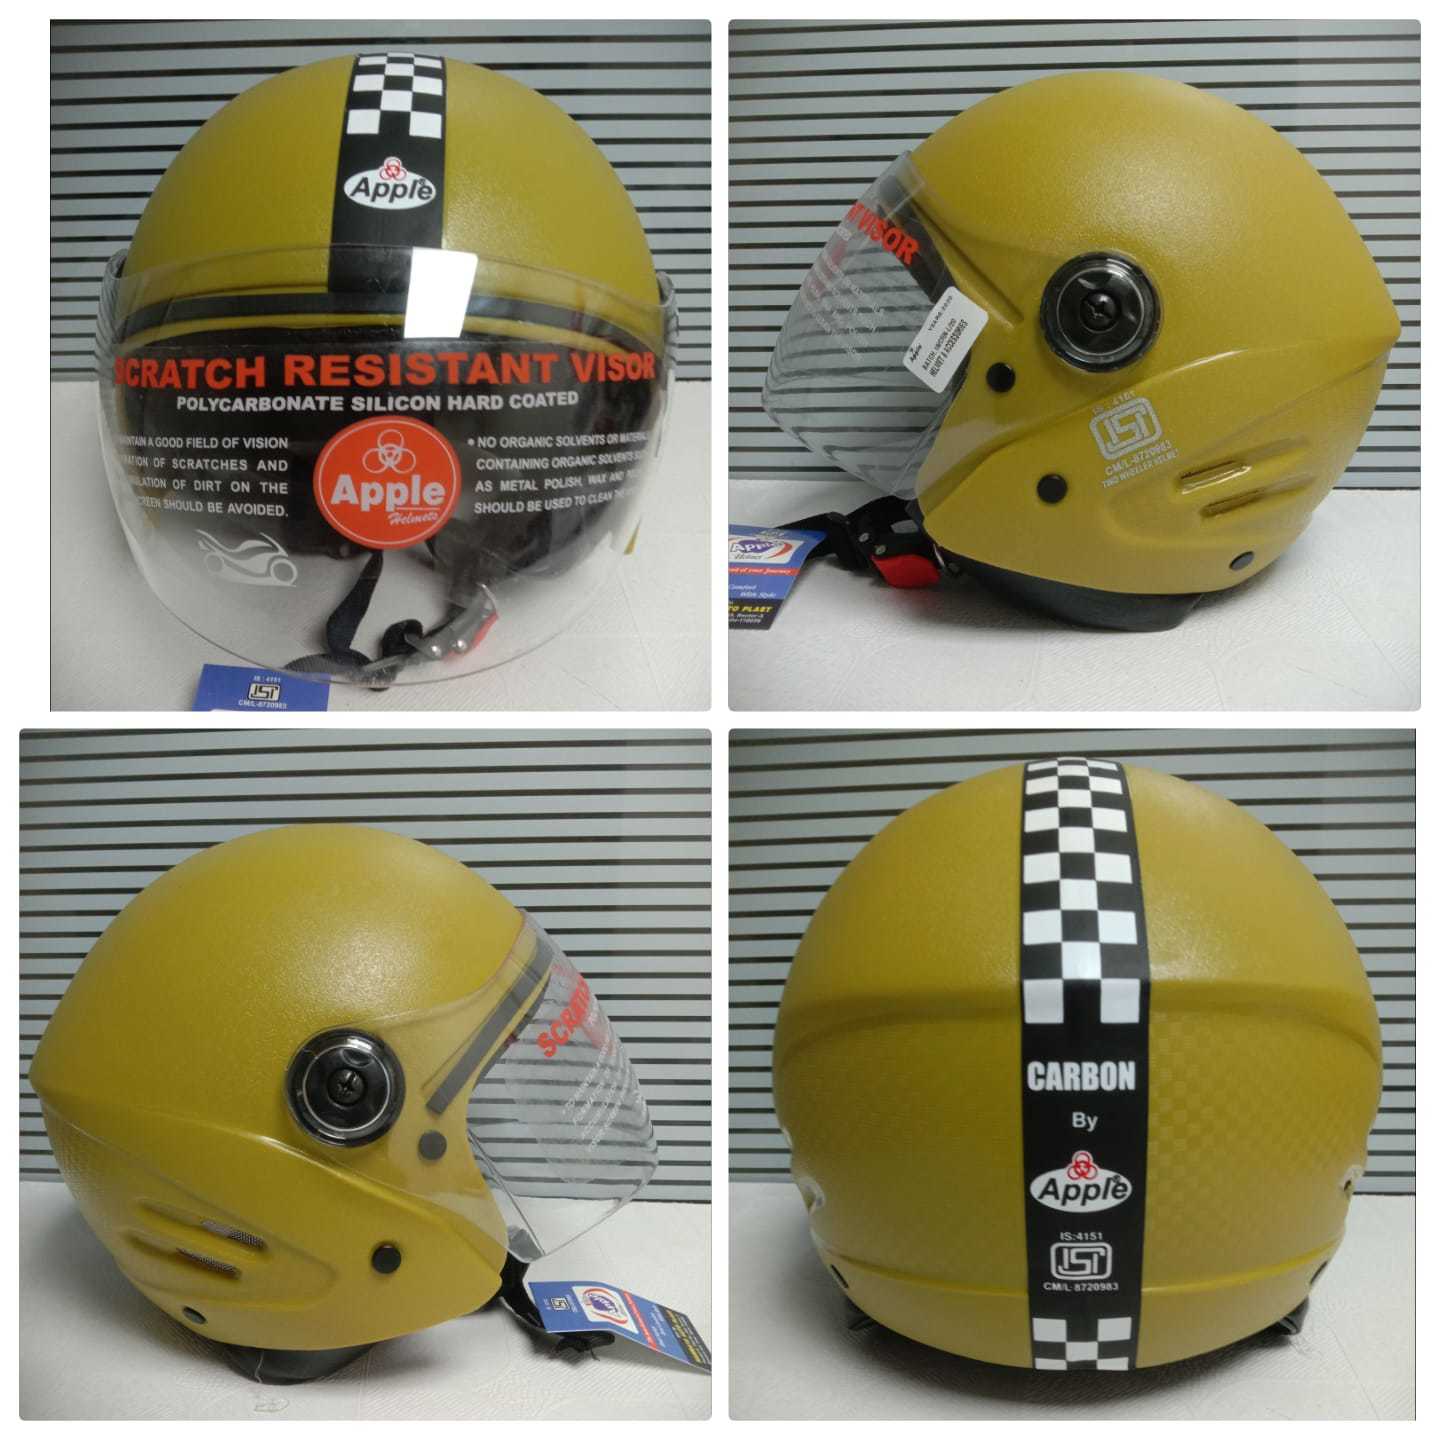 Carbon scooter helmet